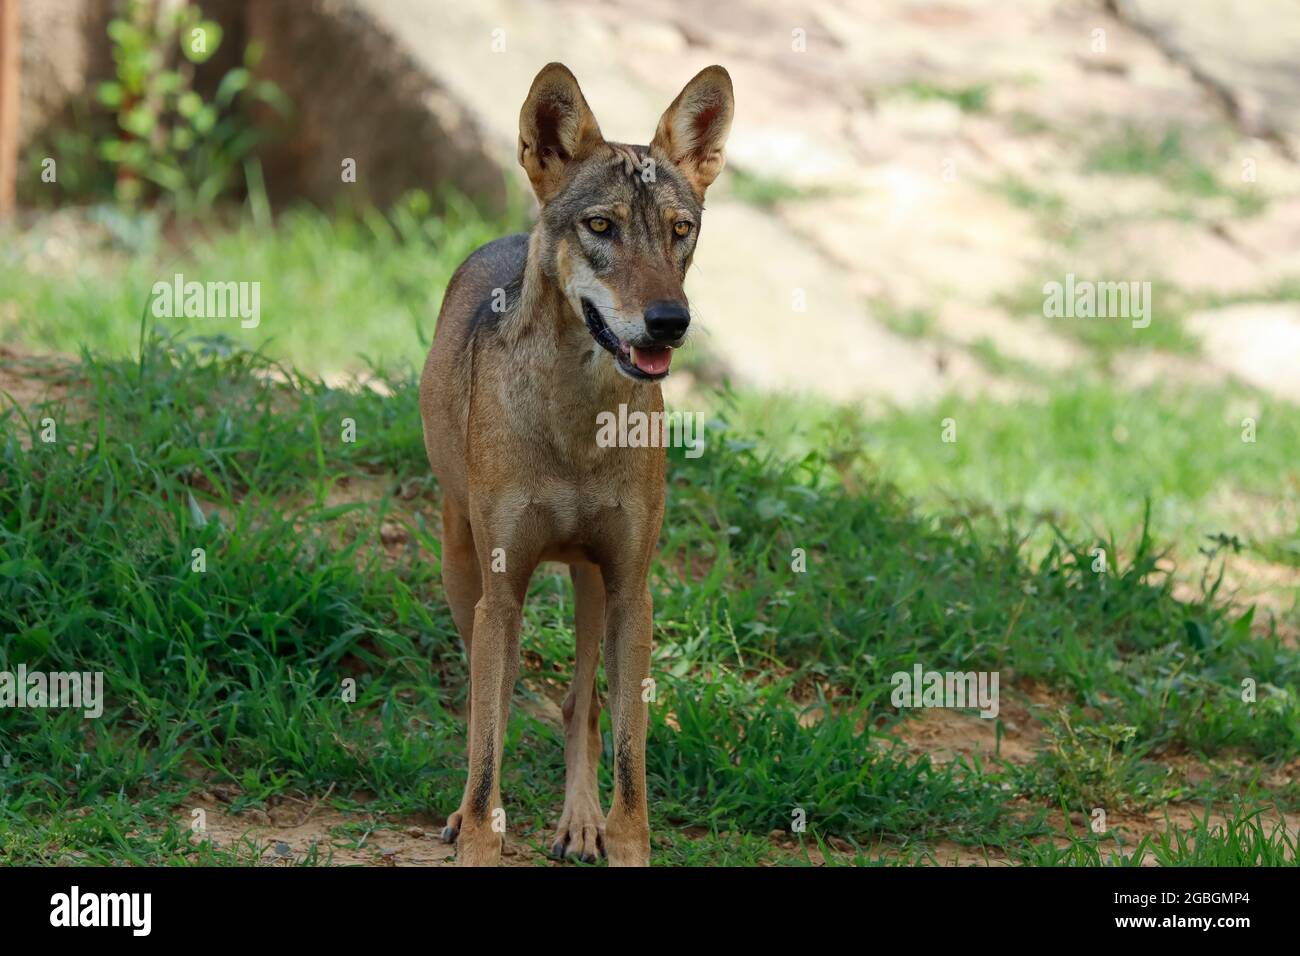 Un loup indien (Canis lupus pallipes) se dresse sur la roche, qui est une sous-espèce de loup gris qui s'étend de l'Asie du Sud-Ouest à la sous-contée indienne Banque D'Images